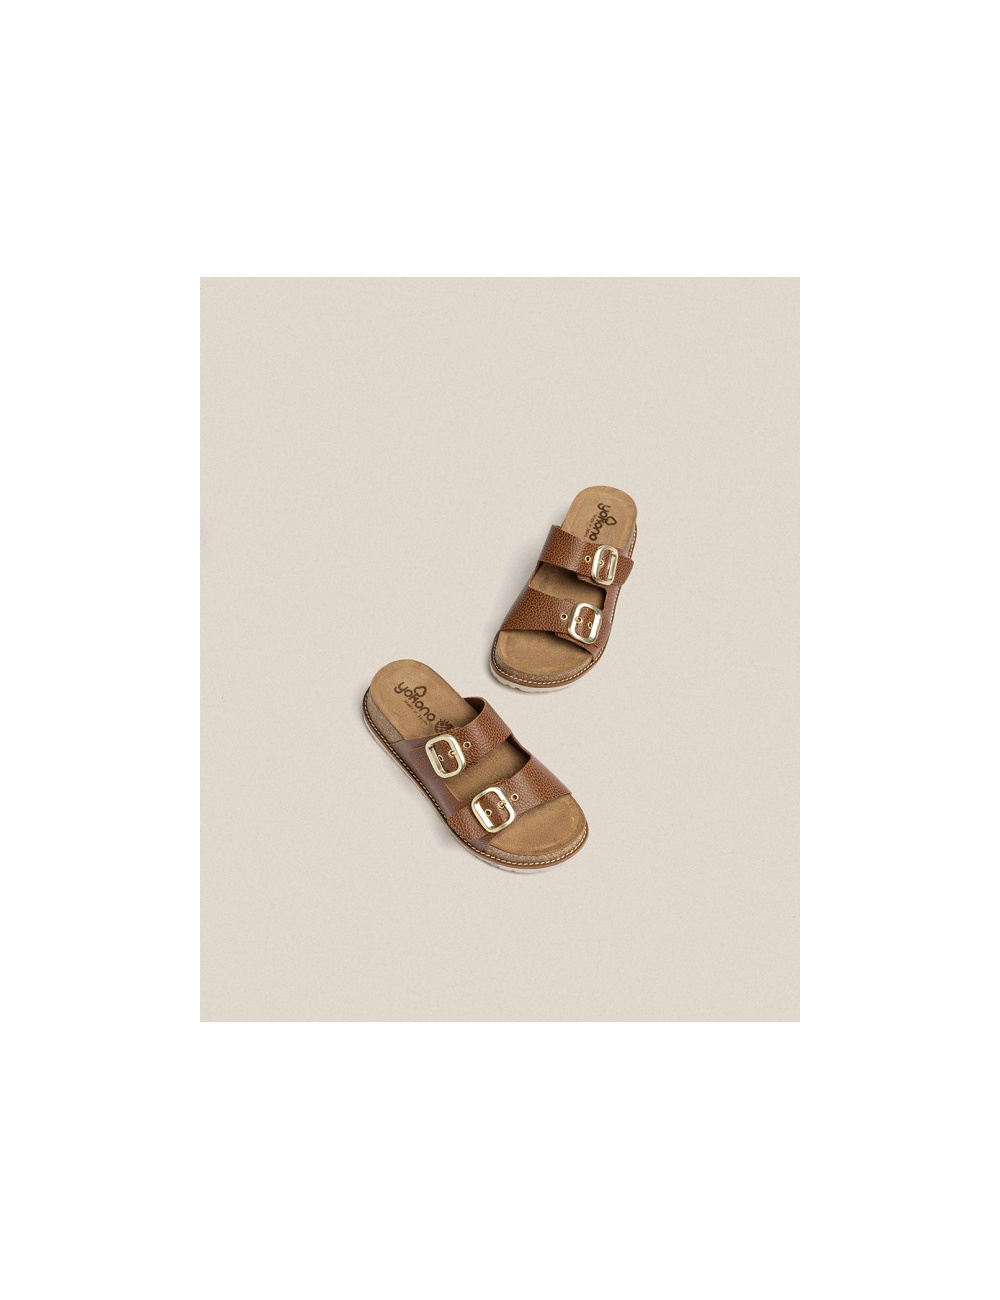 Sandalia de plataforma Oca 013 marrón